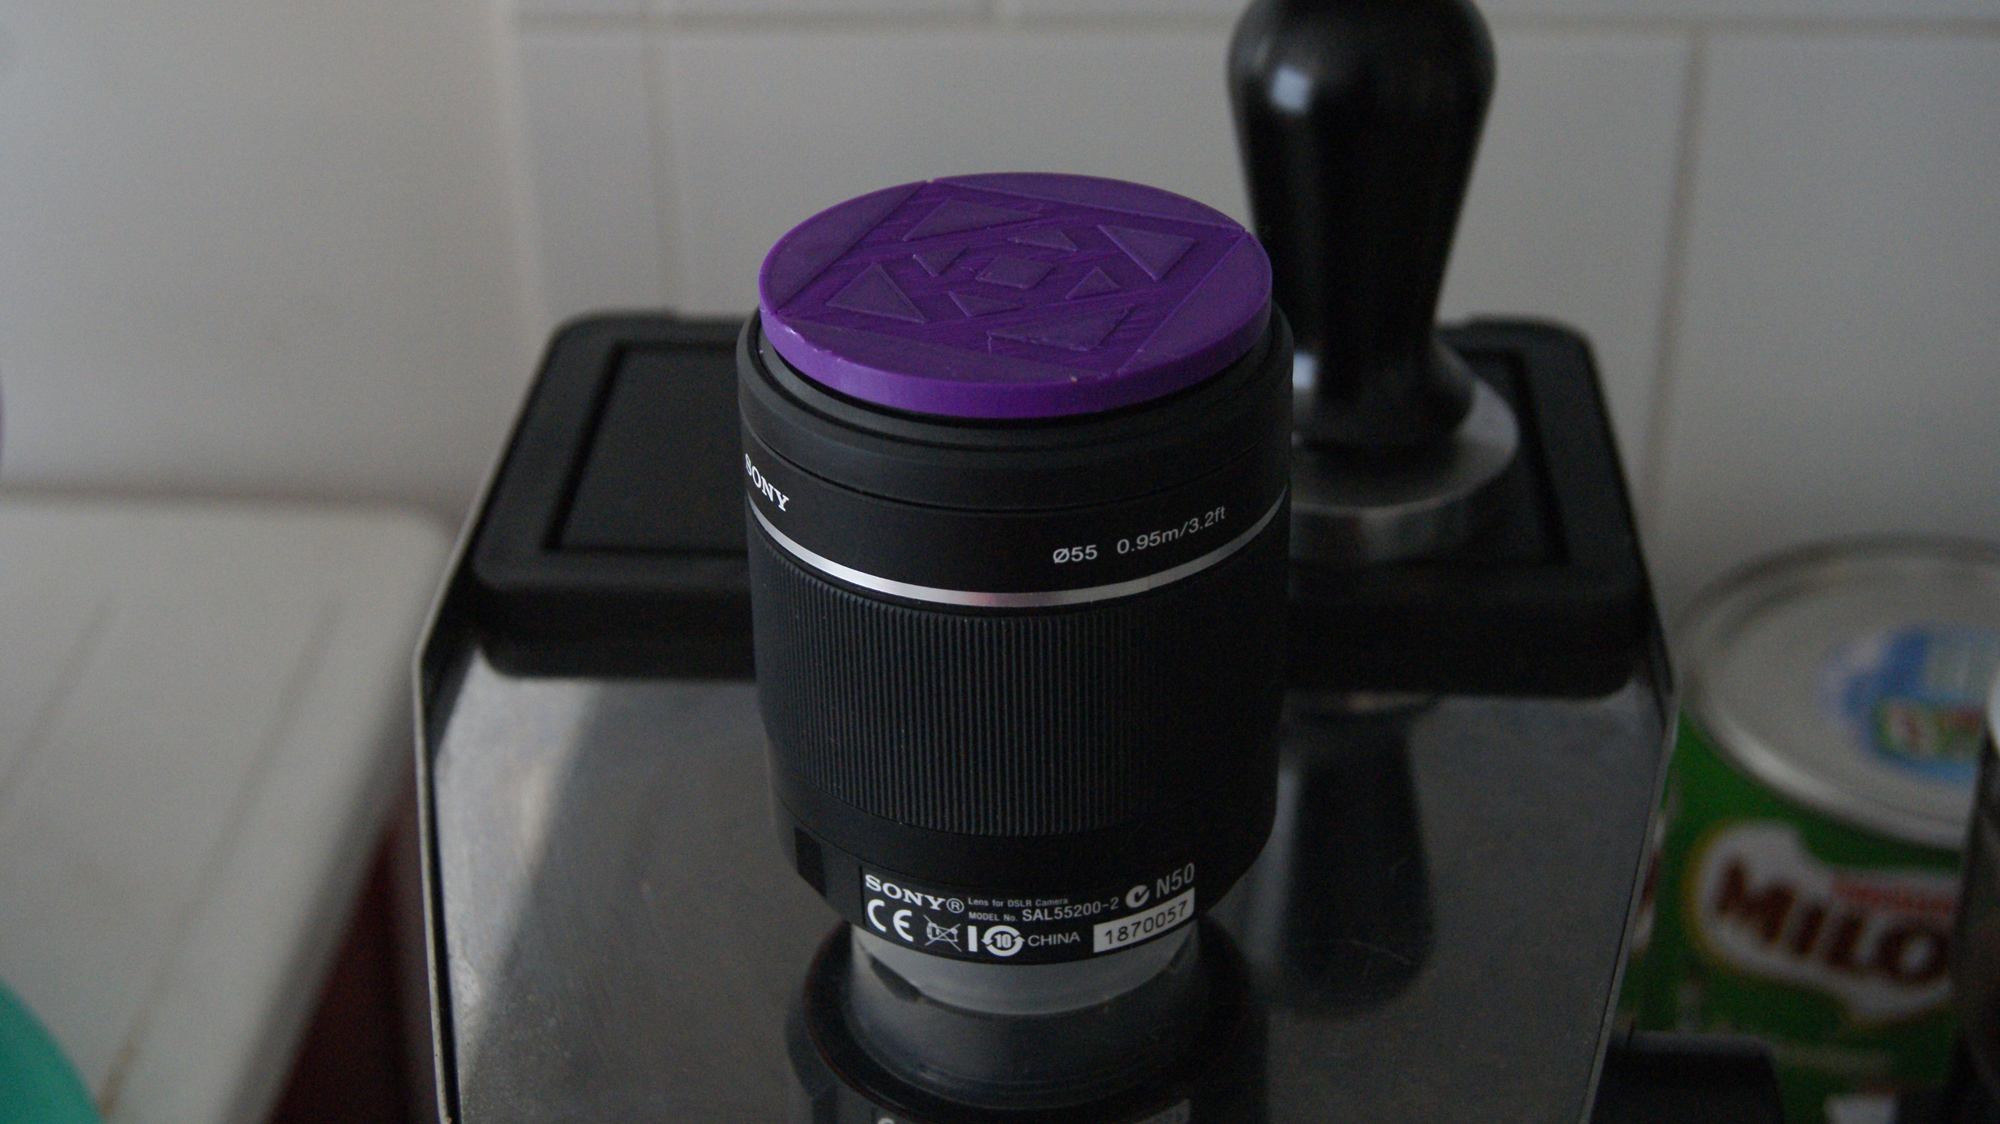 Lens Cover for Sony 55 mm Lenses